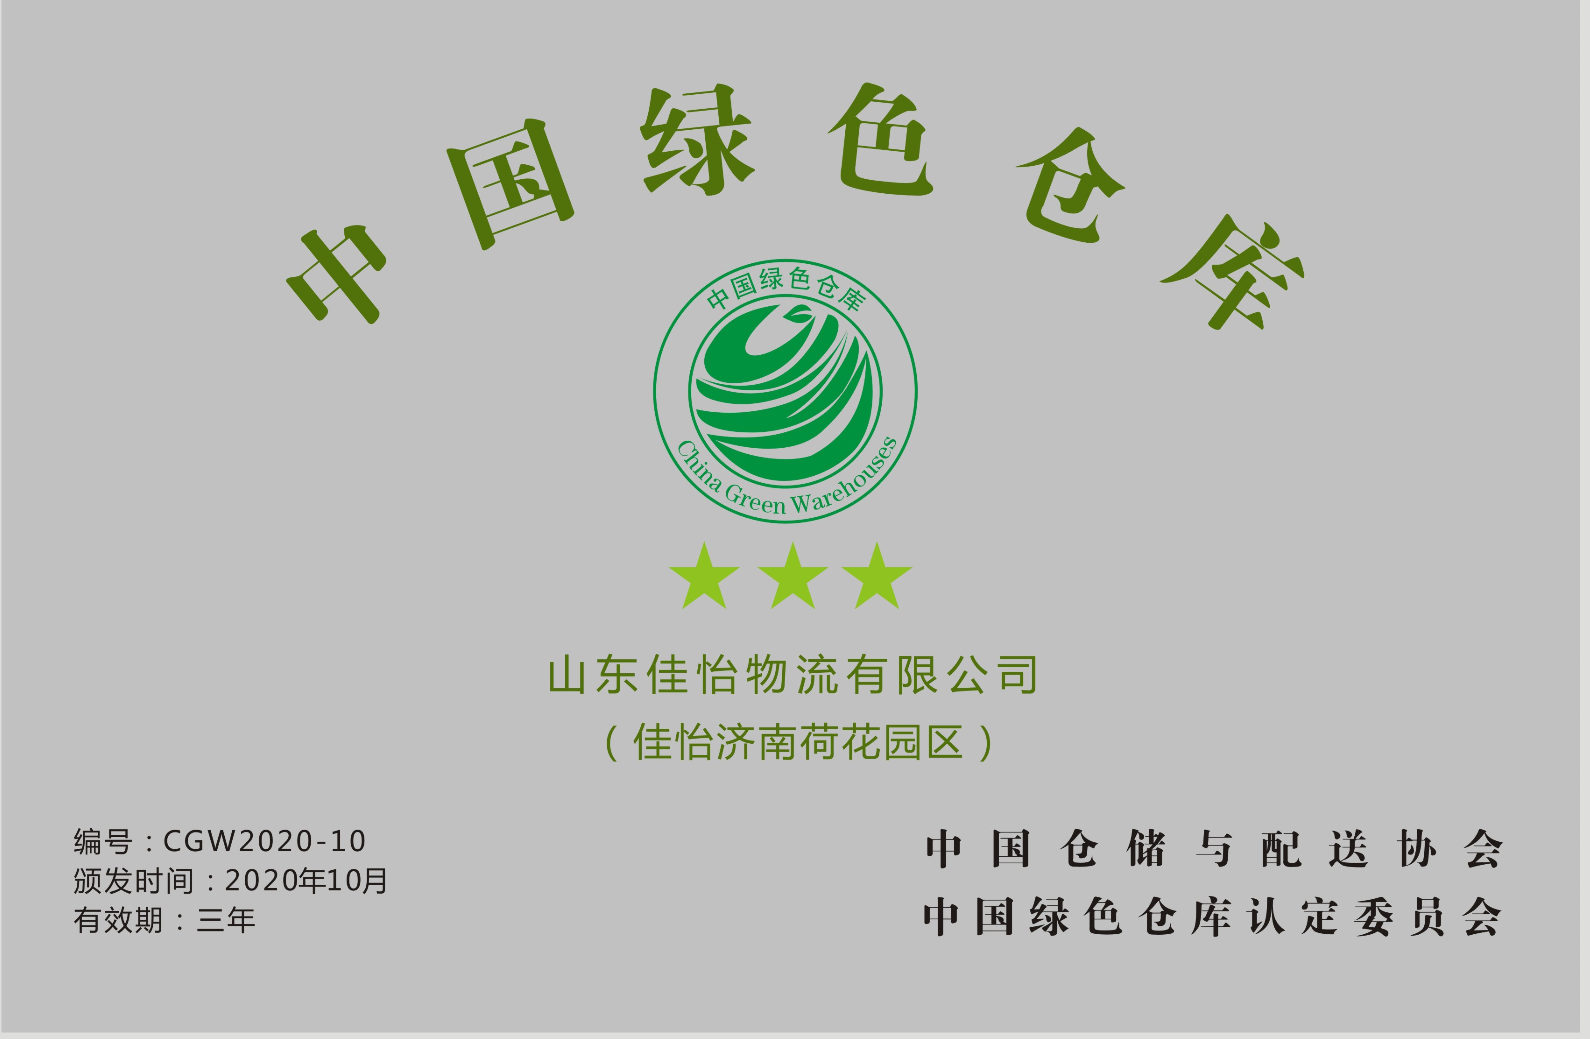 【佳怡喜讯】佳怡园区荣获中国仓储与配送协会颁发的“中国绿色仓库”称号